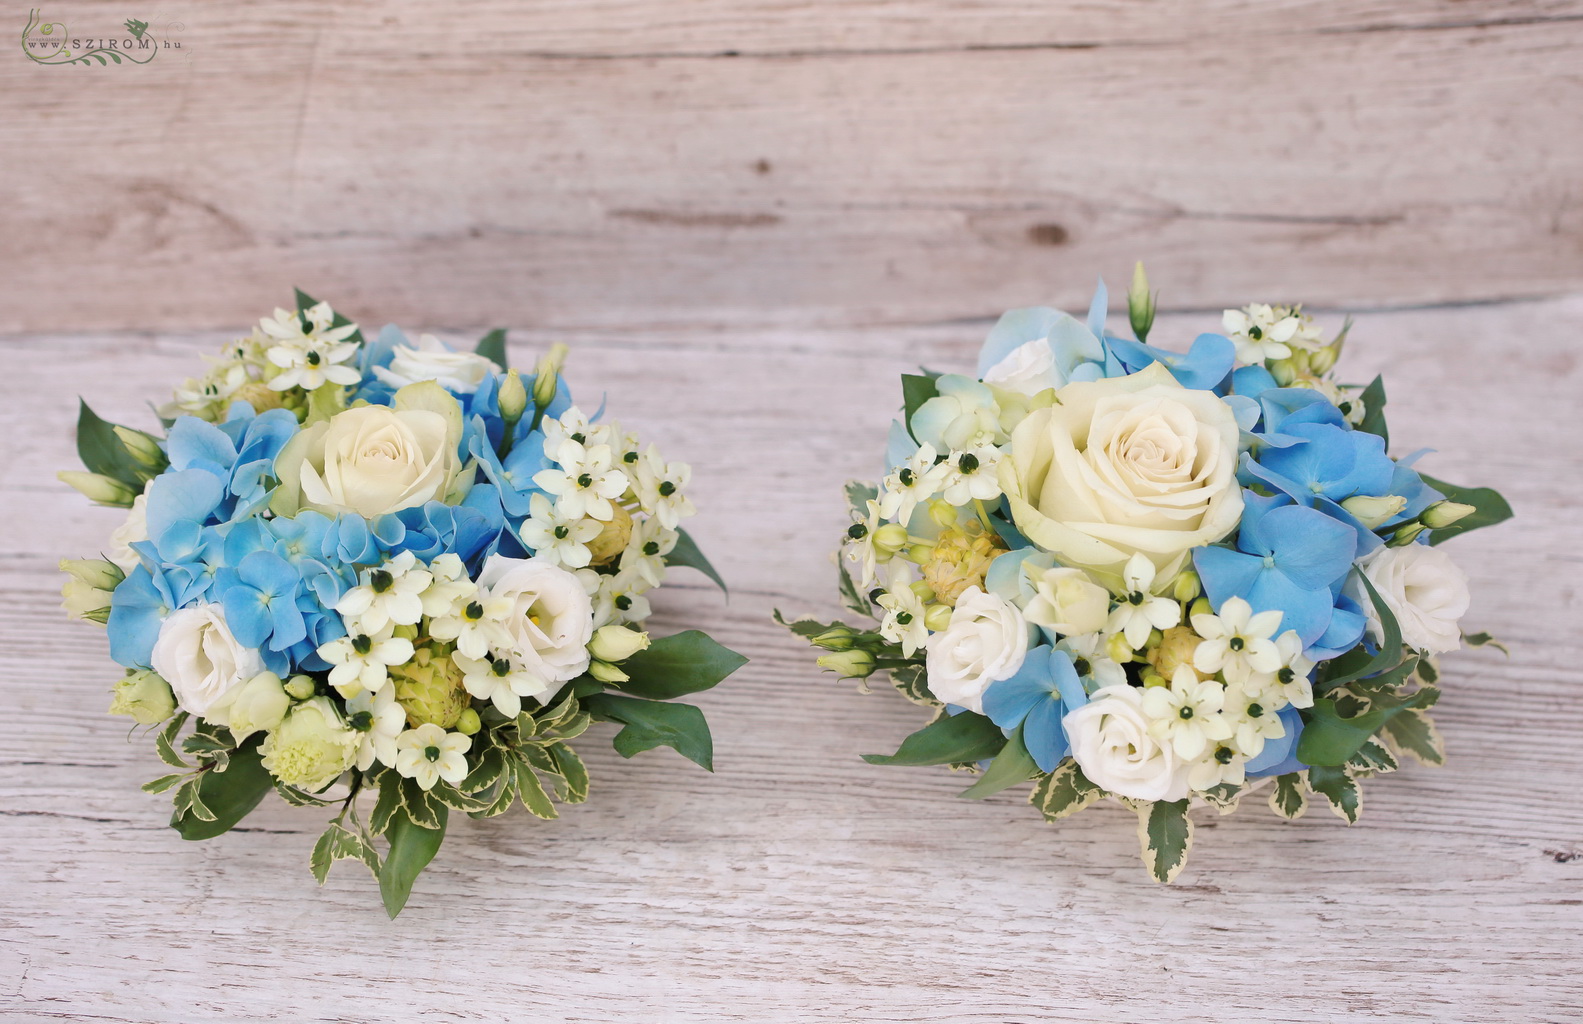 Virágküldés Budapest - Esküvői asztaldísz kék hortenziával, 1db,  ornithogalummal, fehér rózsával